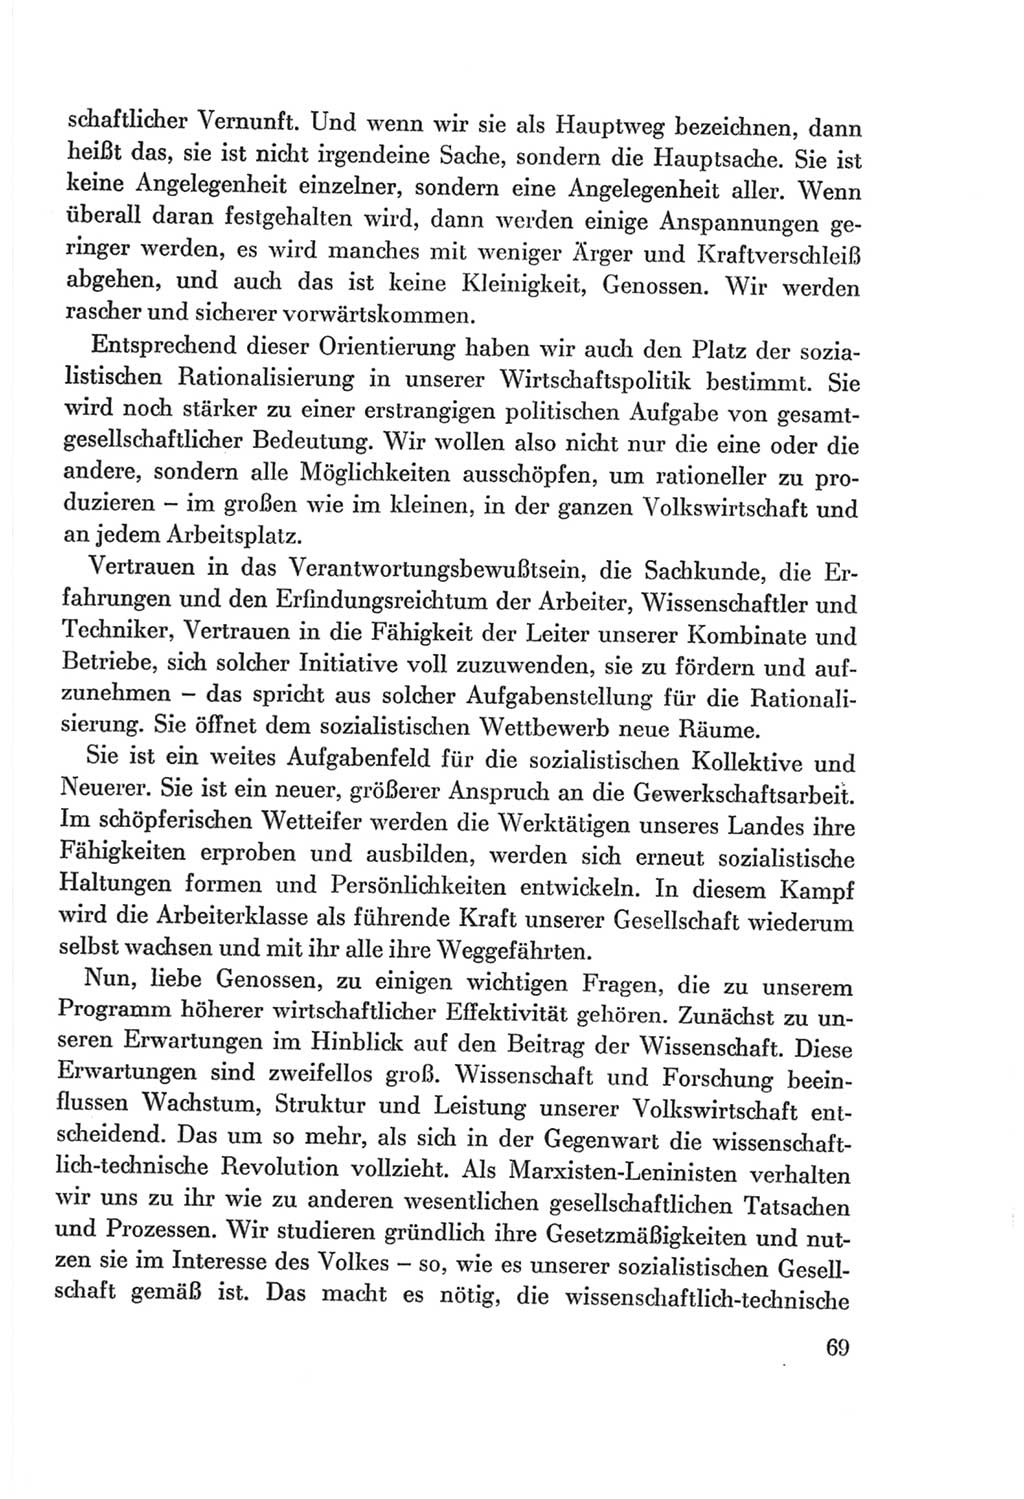 Protokoll der Verhandlungen des Ⅷ. Parteitages der Sozialistischen Einheitspartei Deutschlands (SED) [Deutsche Demokratische Republik (DDR)] 1971, Band 1, Seite 69 (Prot. Verh. Ⅷ. PT SED DDR 1971, Bd. 1, S. 69)